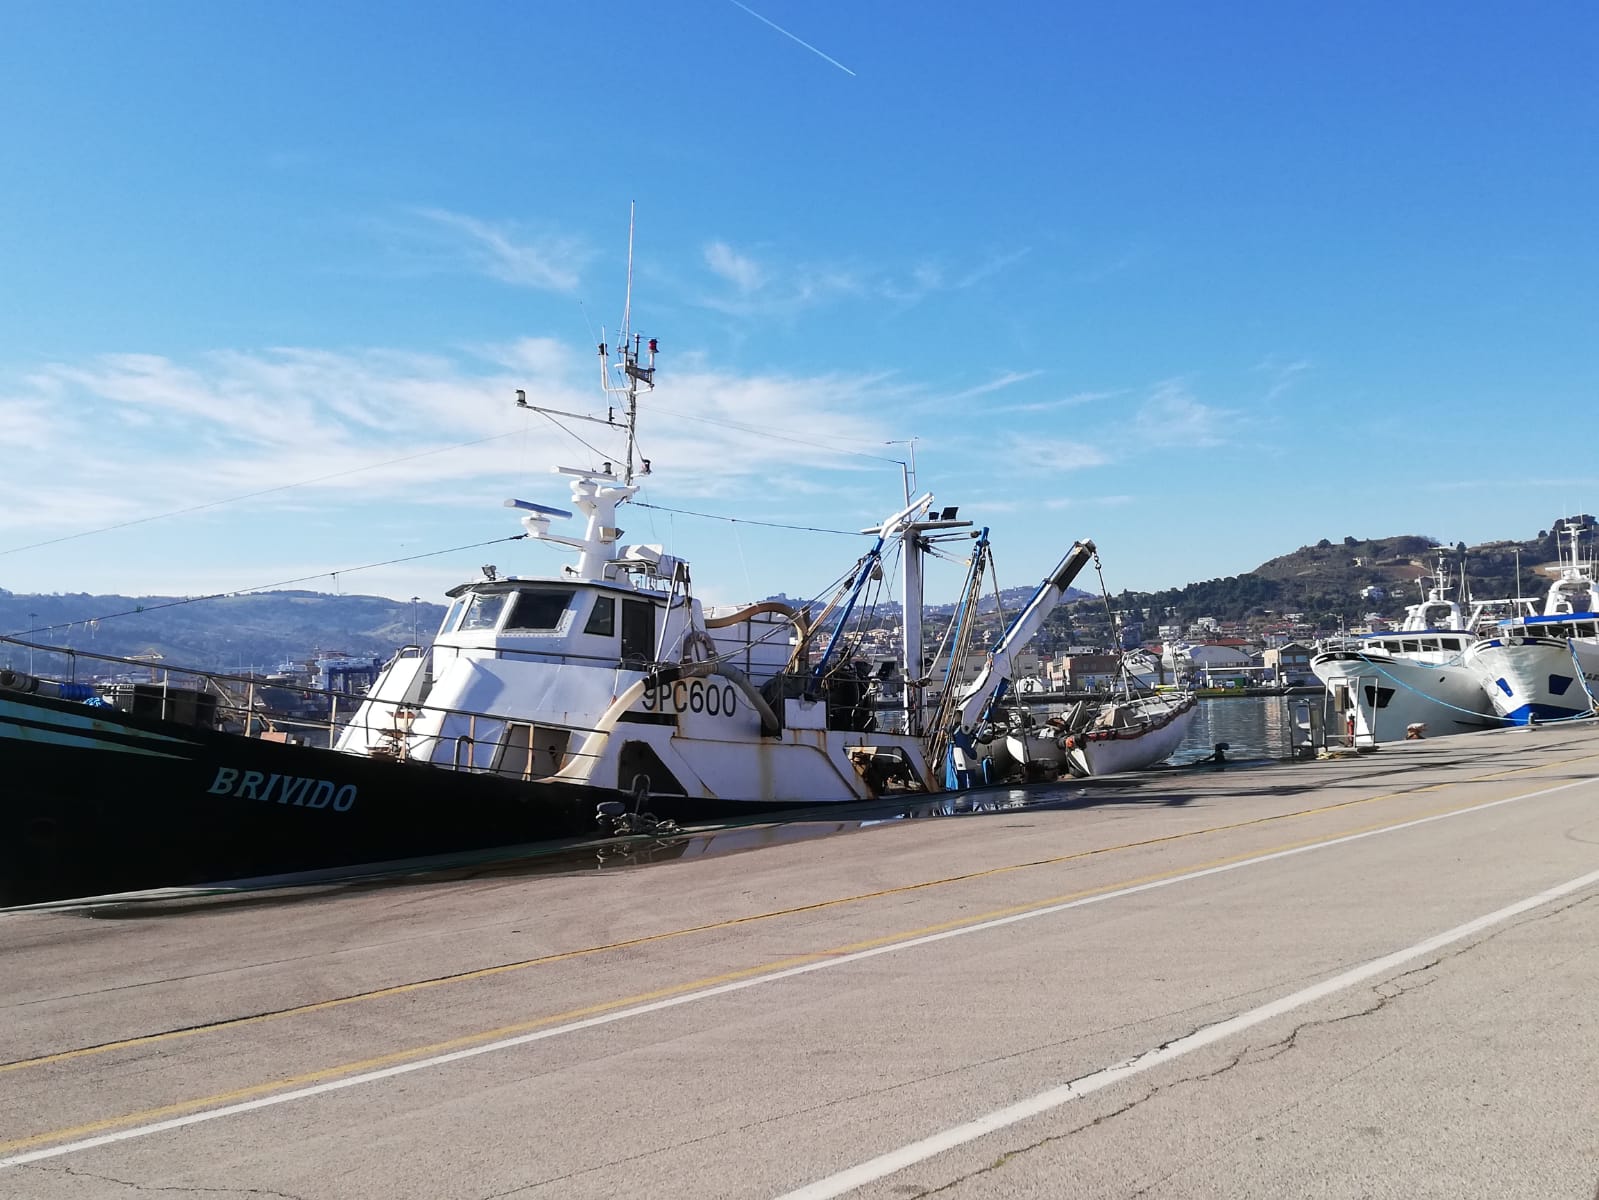 Colpo al porto di San Benedetto, ladri in due imbarcazioni